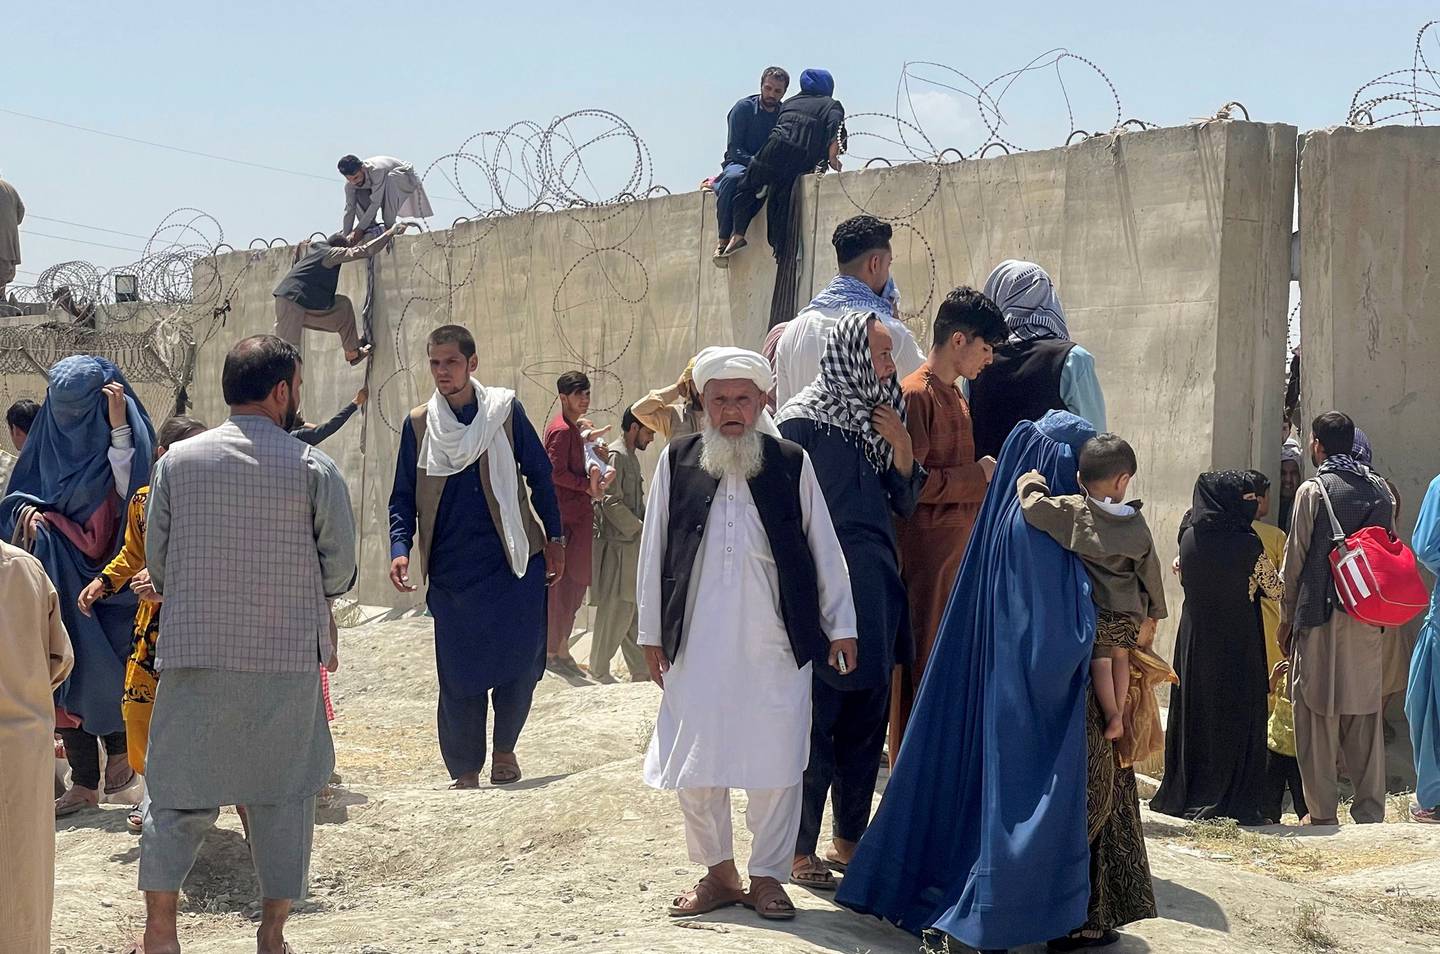 Mange afghanere er desperate etter å komme seg ut av landet. Folk prøvde å komme seg inn på flyplassen i Kabul mandag.